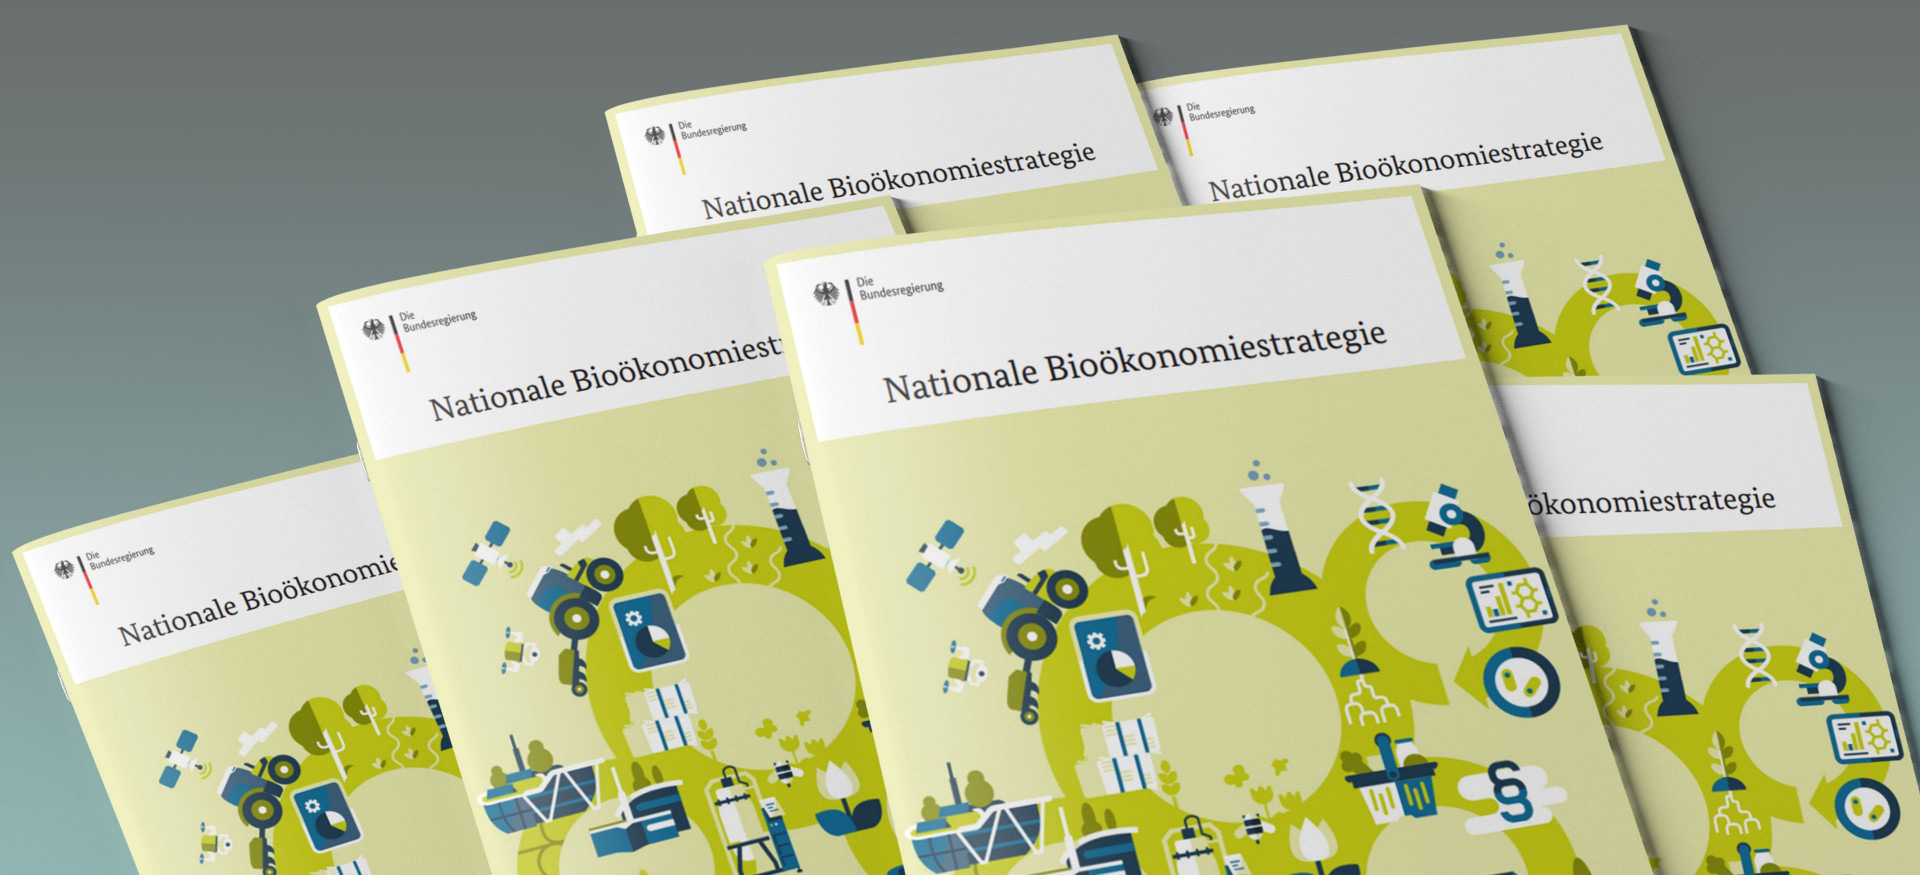 Das Bild zeigt einen Stapel Broschüren mit dem Titel "Nationale Bioökonomiestrategie".